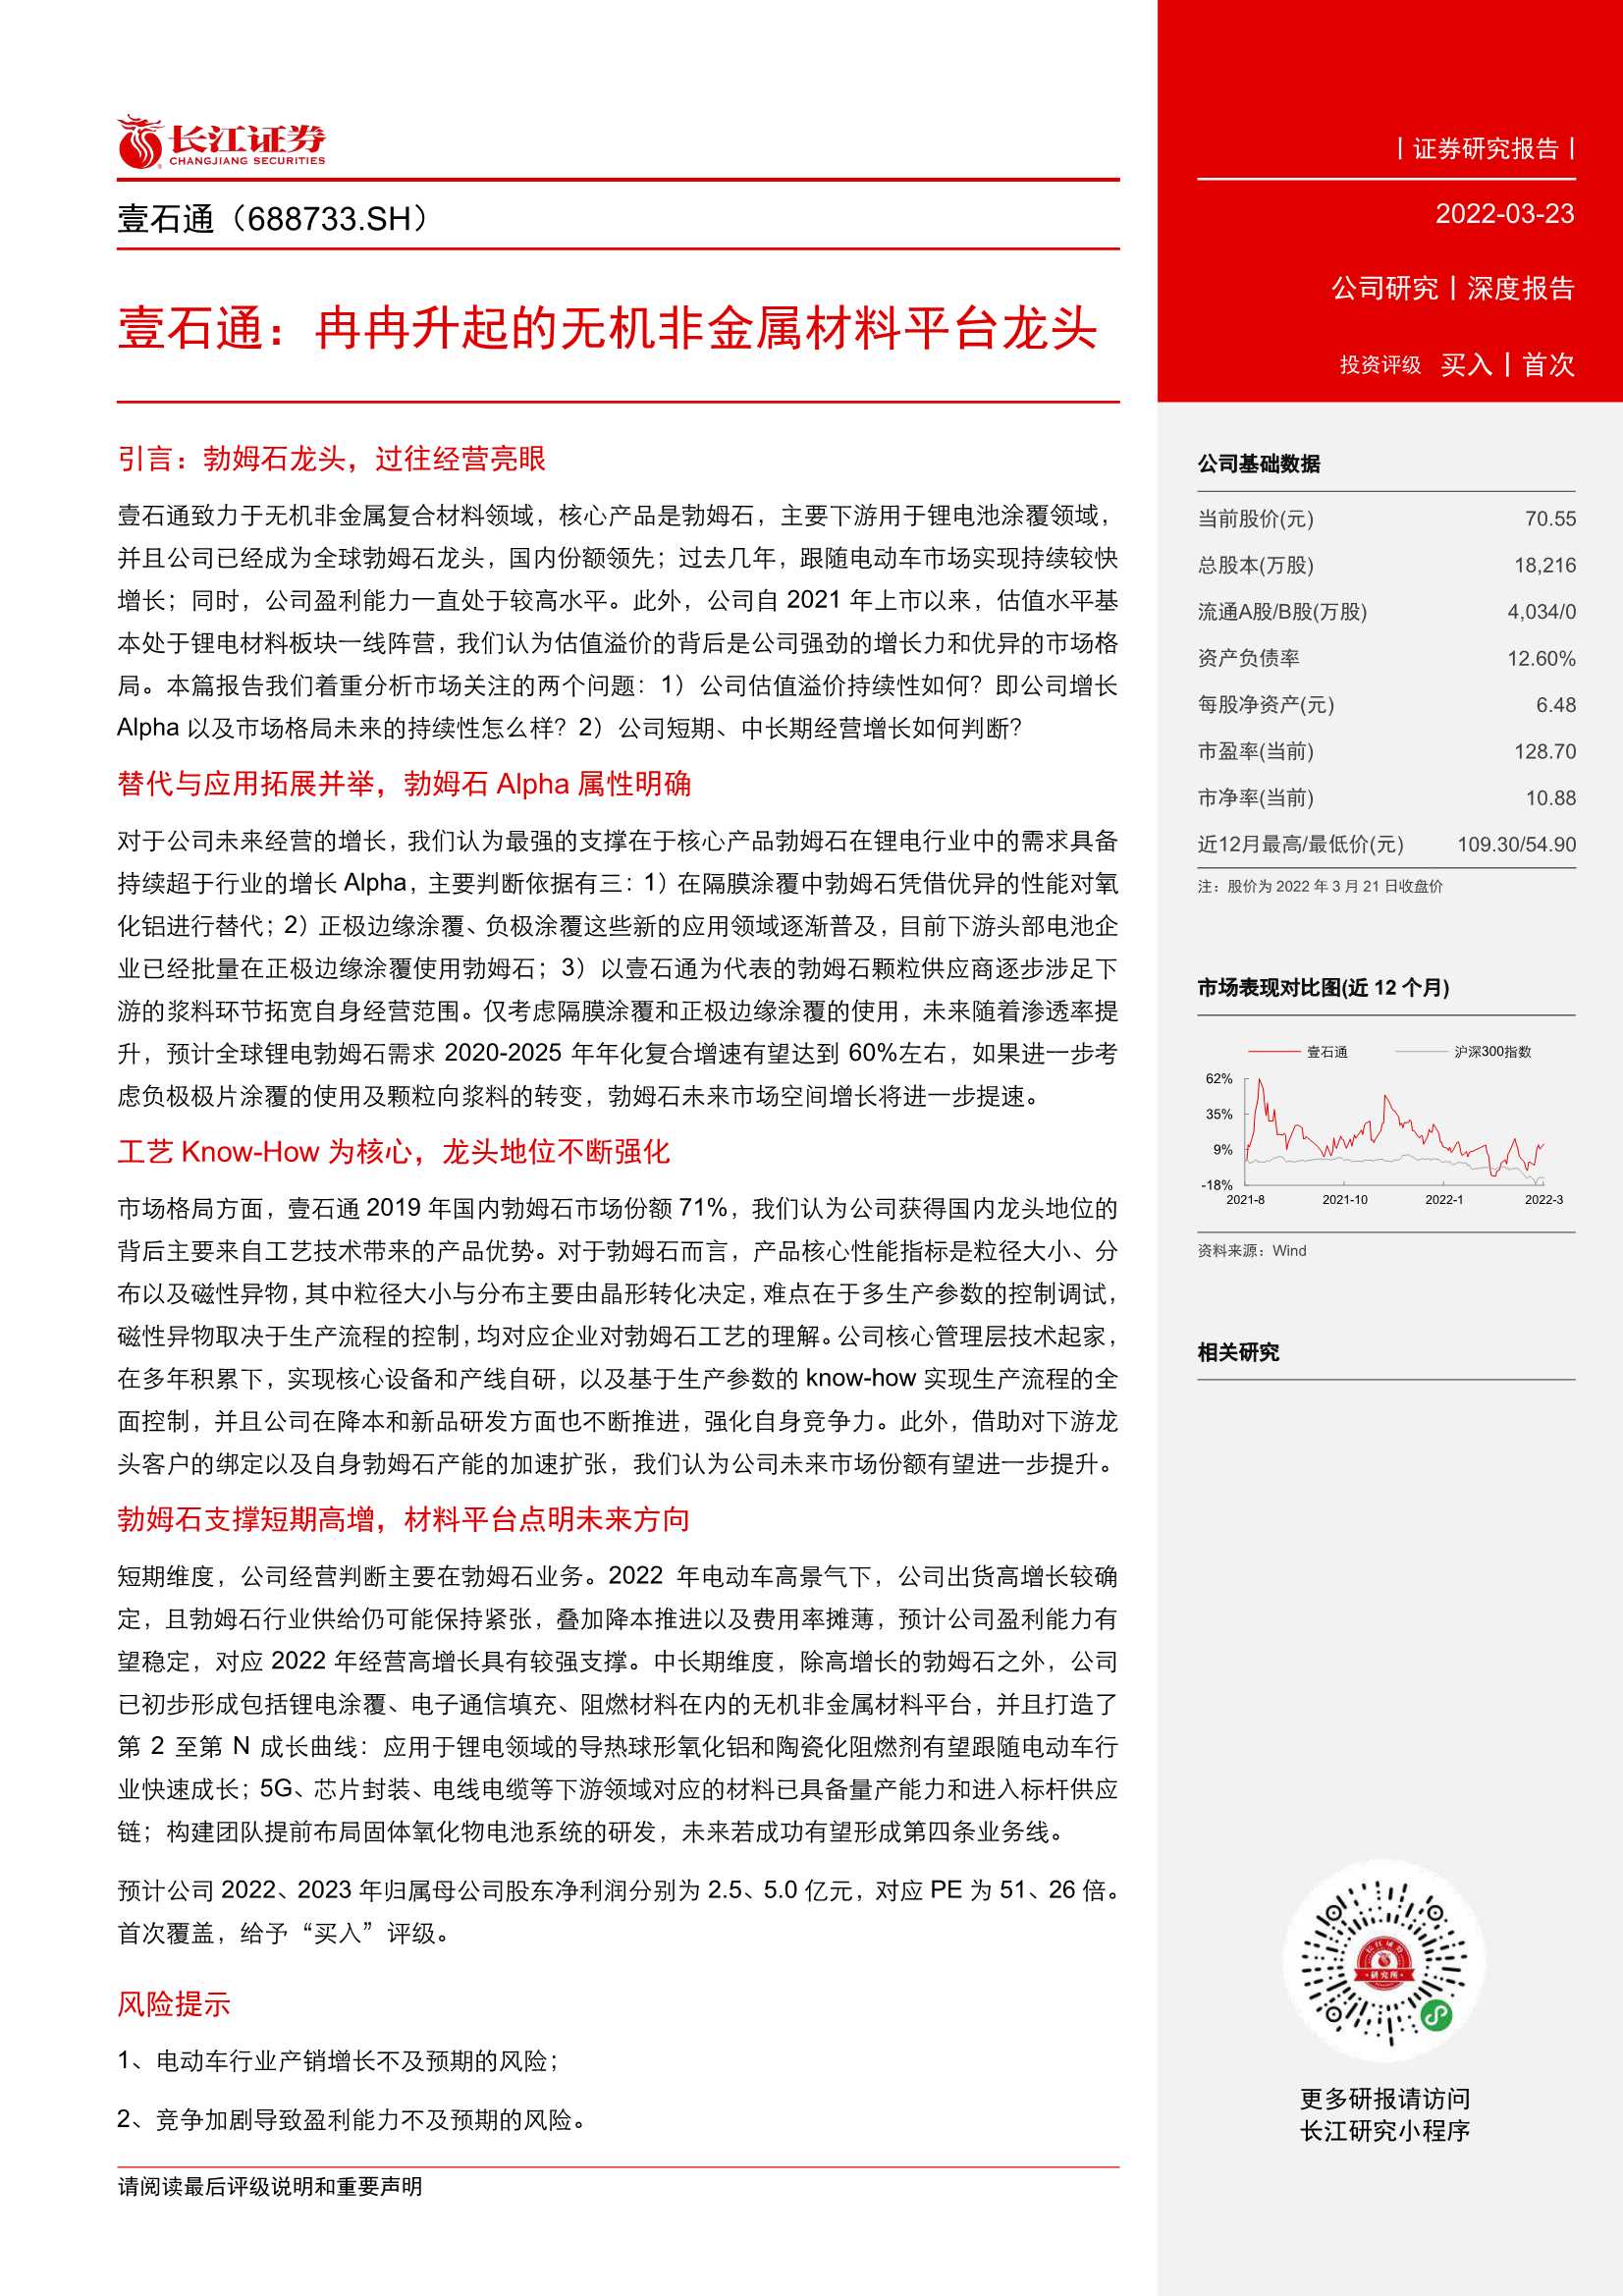 长江证券-壹石通-688733-冉冉升起的无机非金属材料平台龙头-20220323-29页